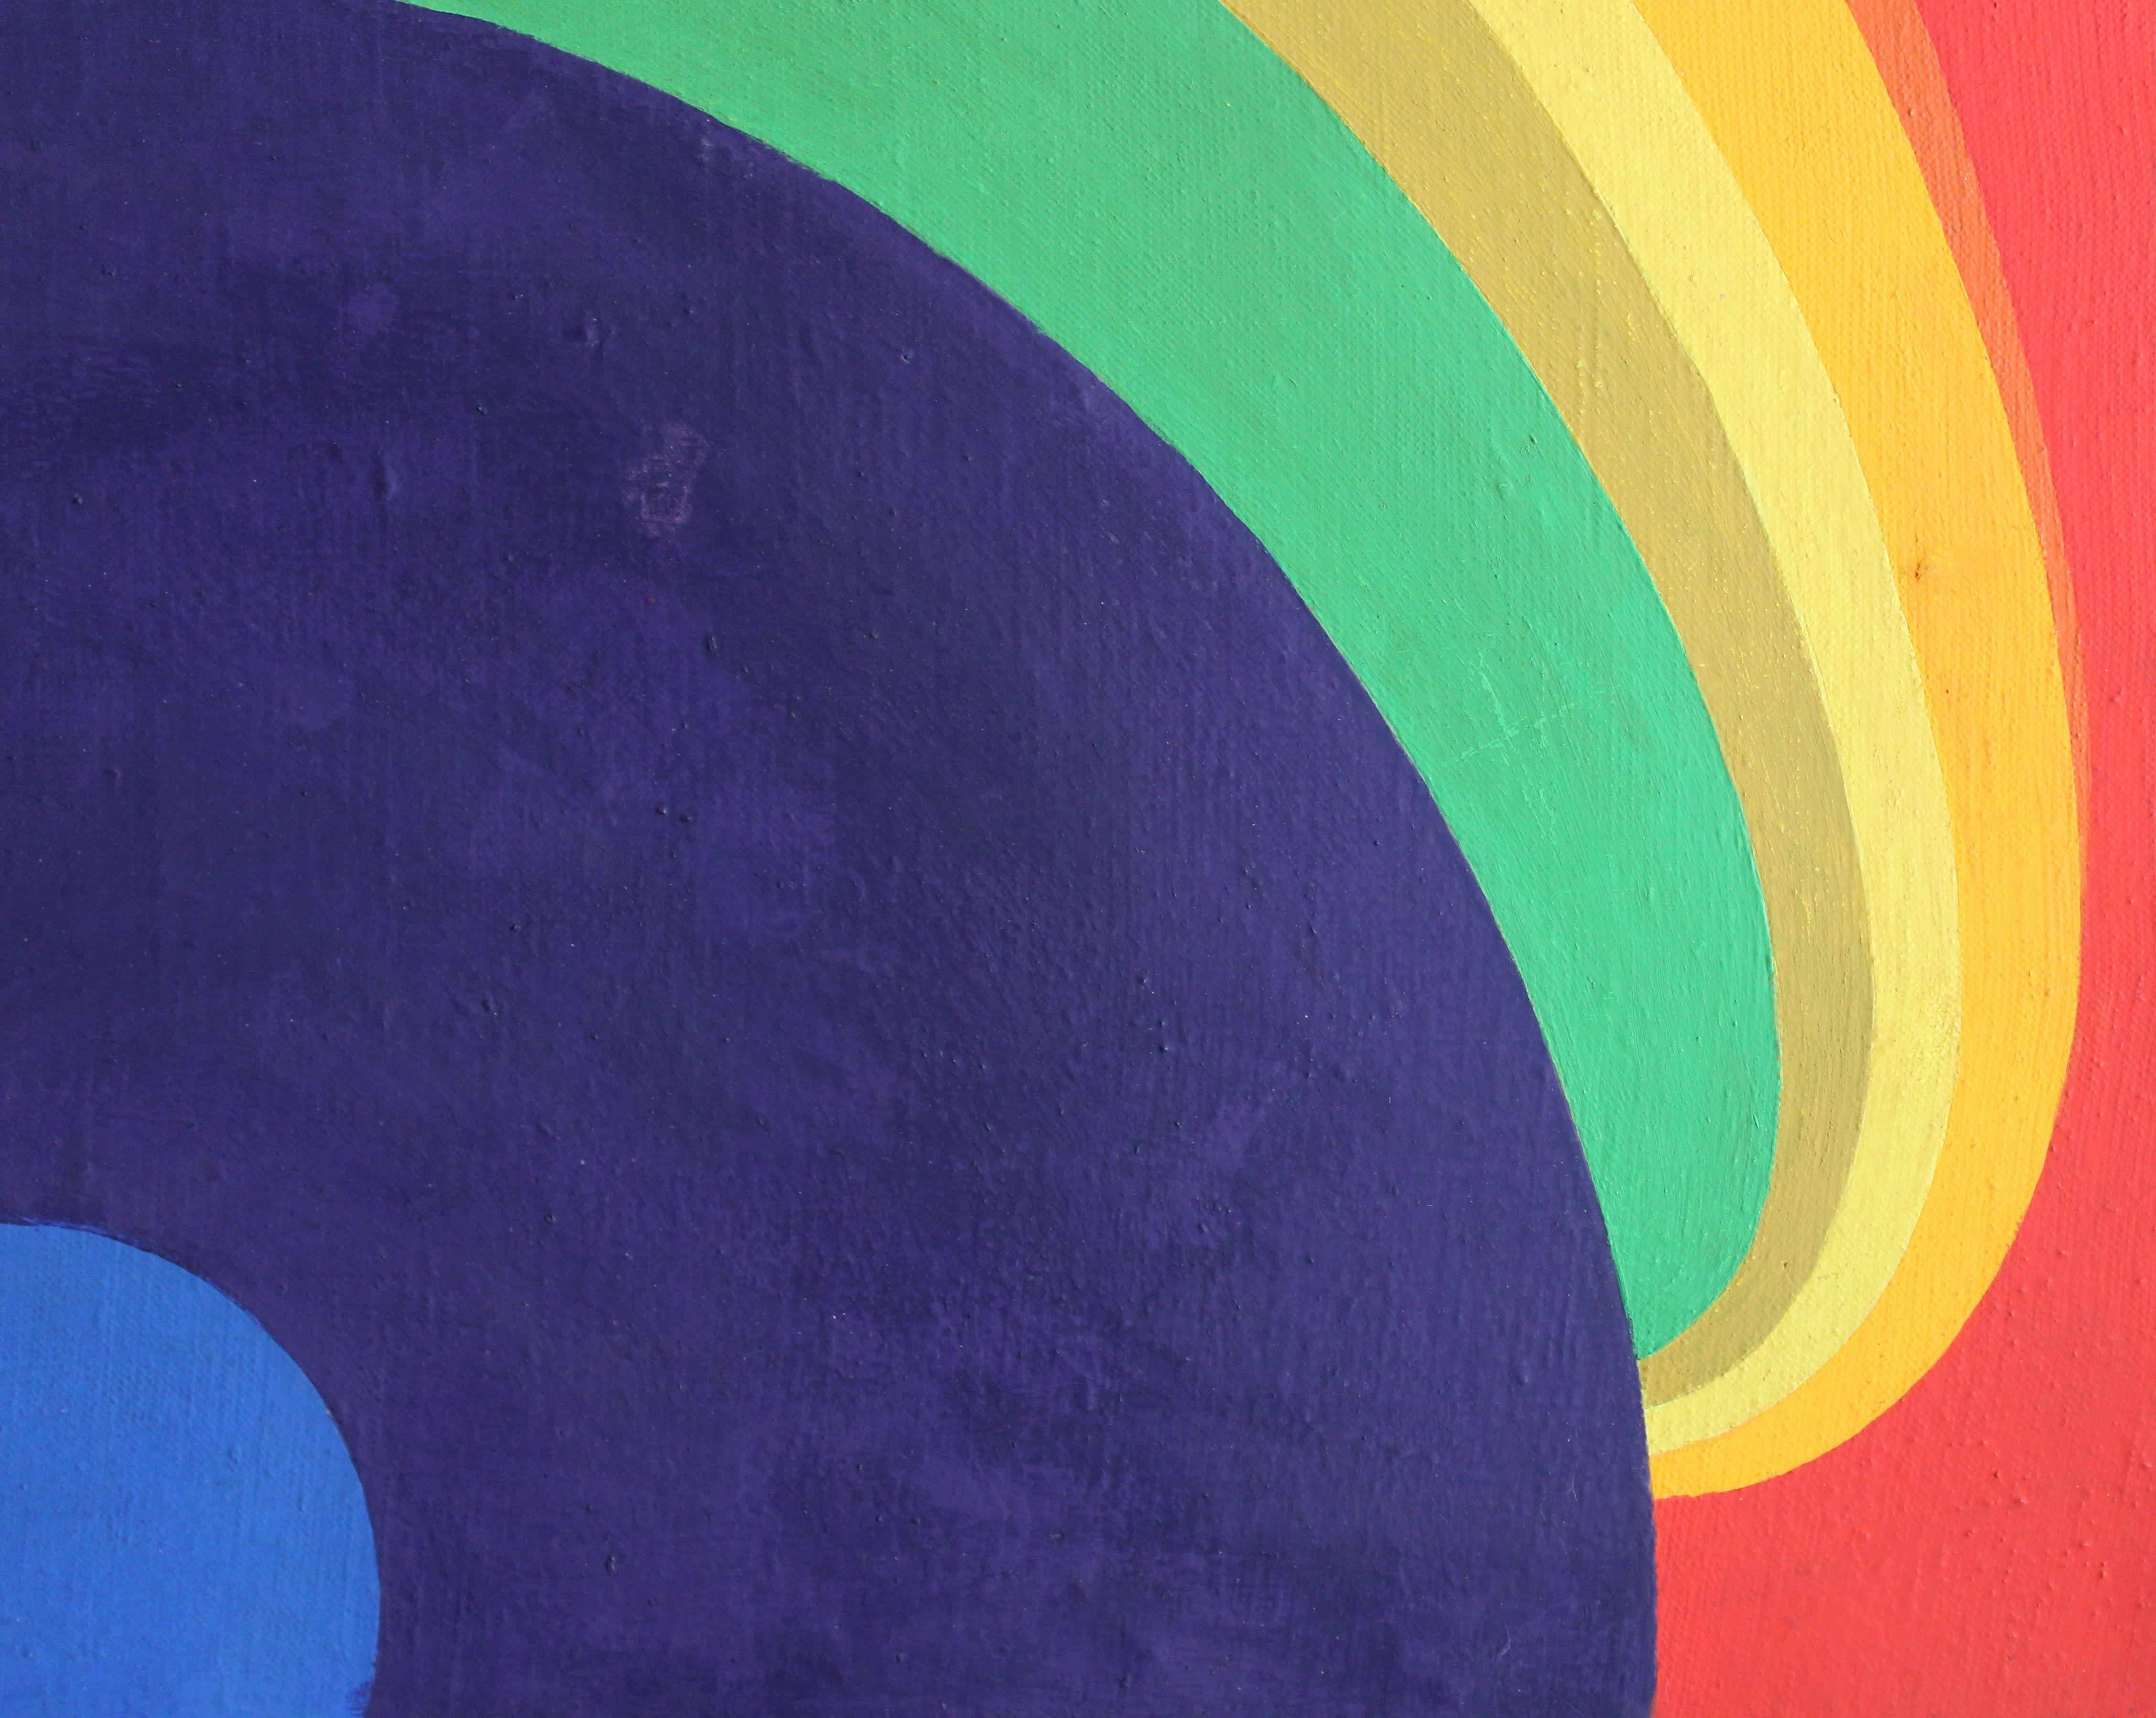 Komposition. 1973, Leinwand, synthetische Tempera, Kalt-Enkaustik, 87x64 cm
Kubistische Komposition in den Farben rot, gelb, grün, blau
